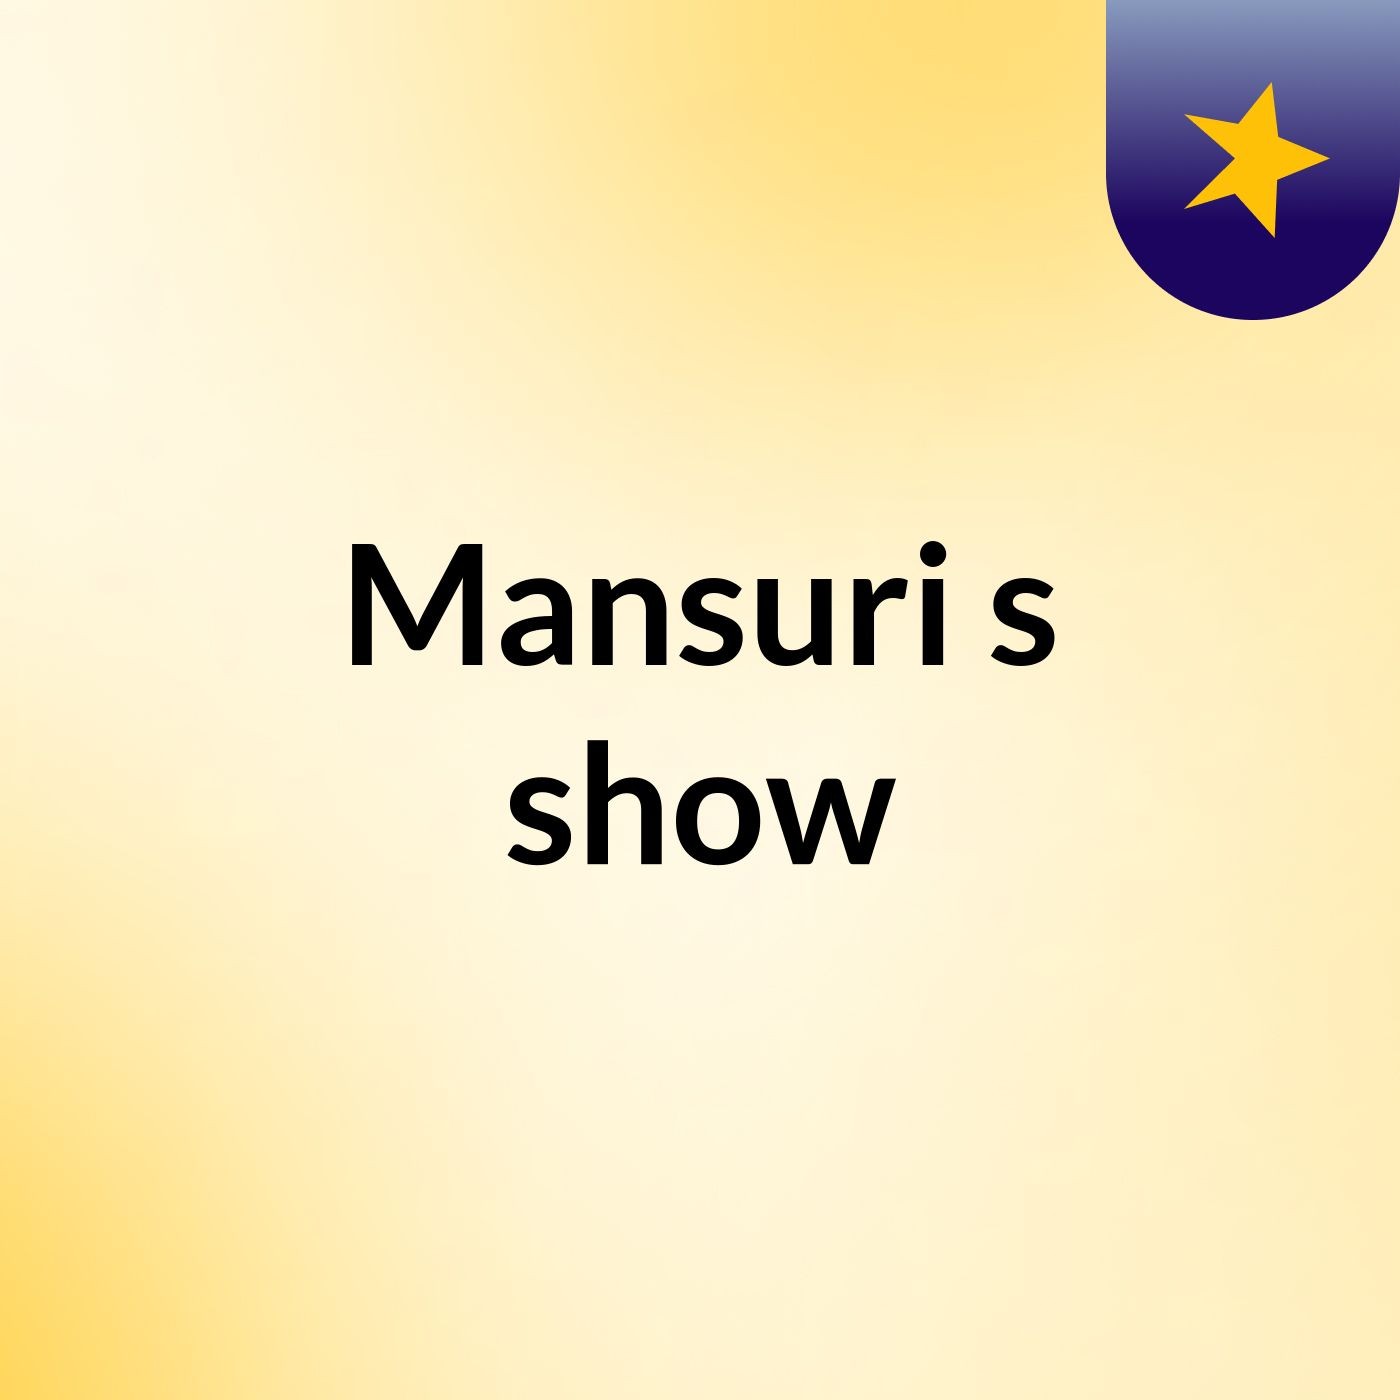 Mansuri's show